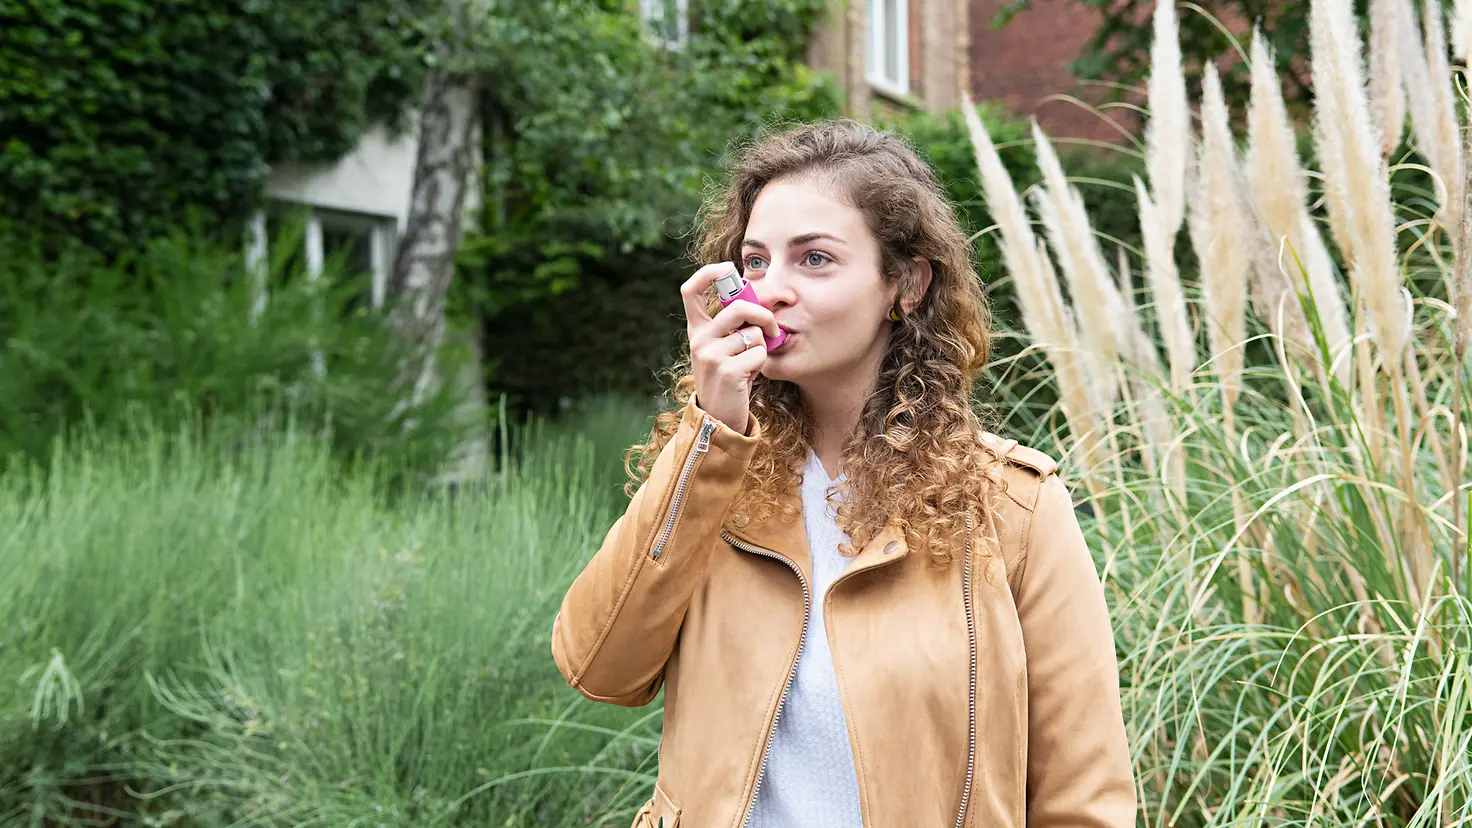 Eine junge Frau inhaliert ein Medikament gegen Asthma.